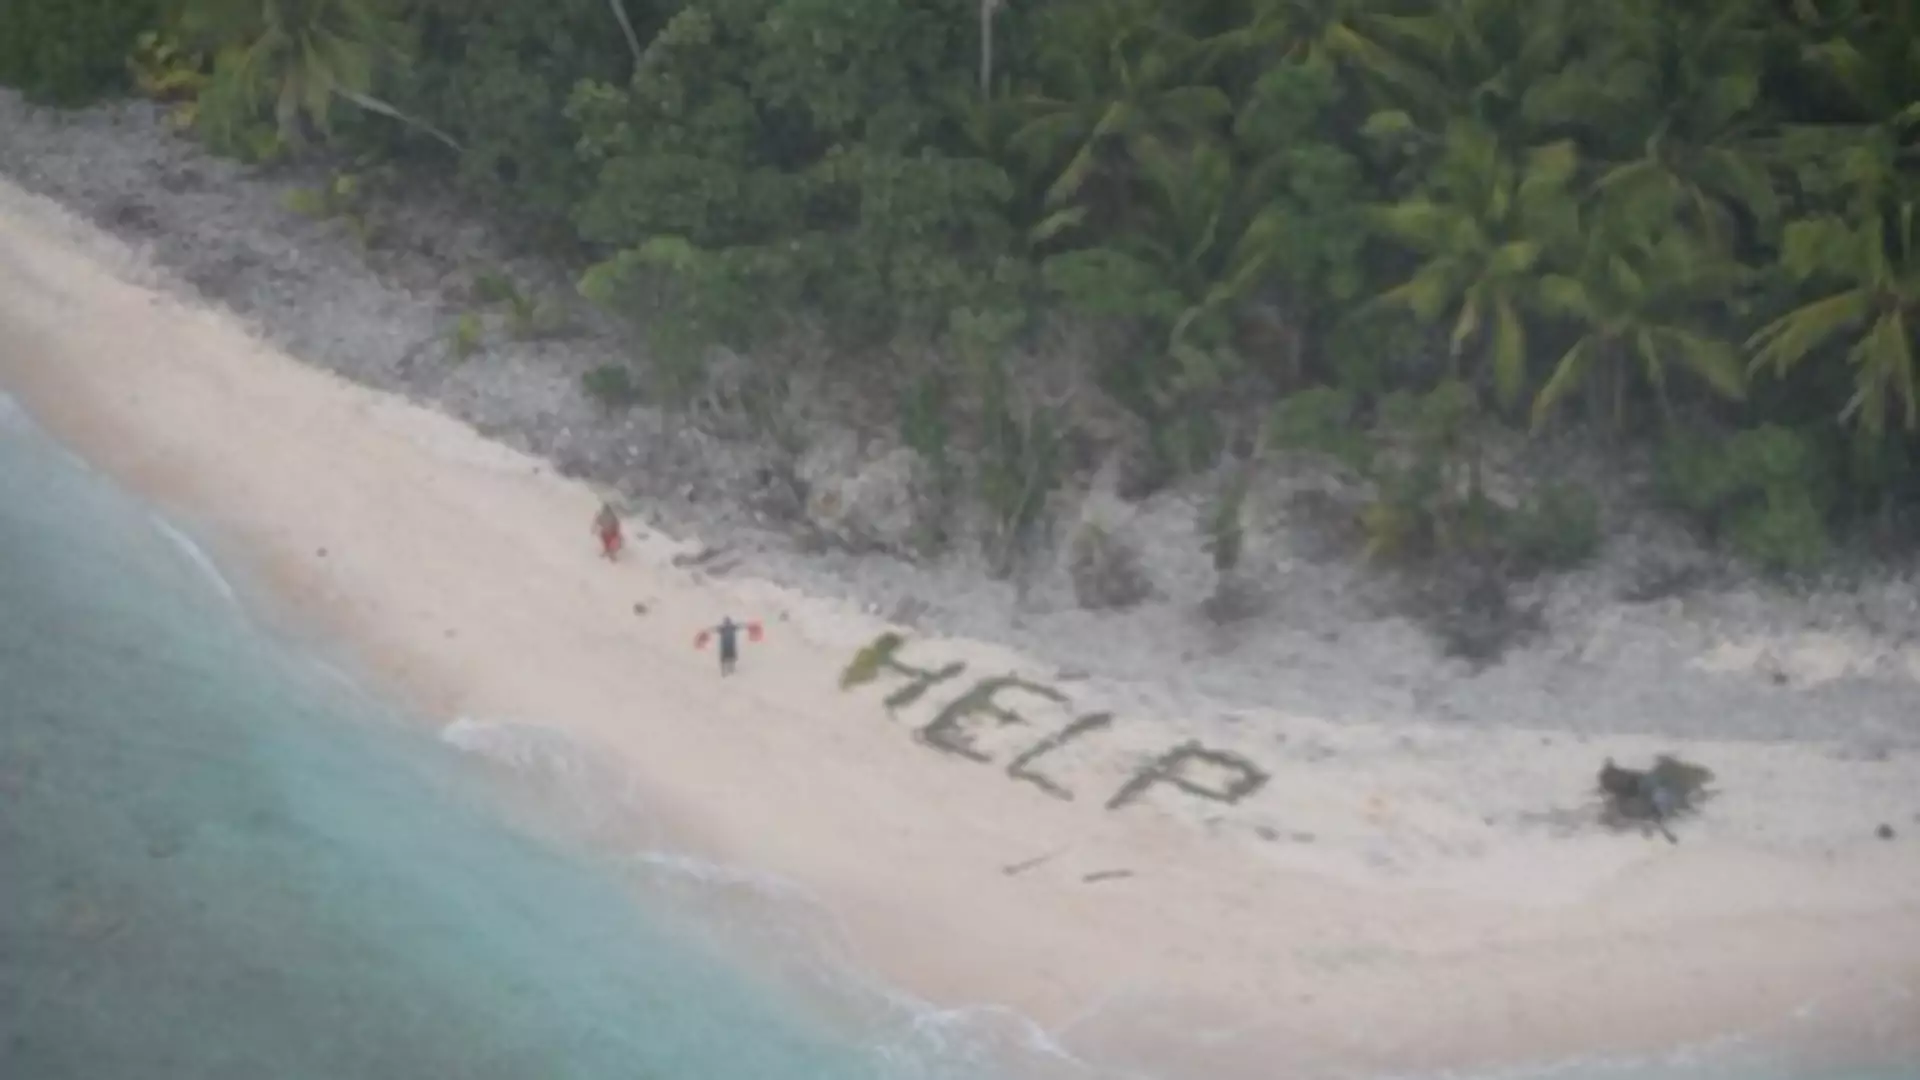 Trzej mężczyźni zostali uratowani z wyspy, dzięki napisowi "pomocy" na piasku